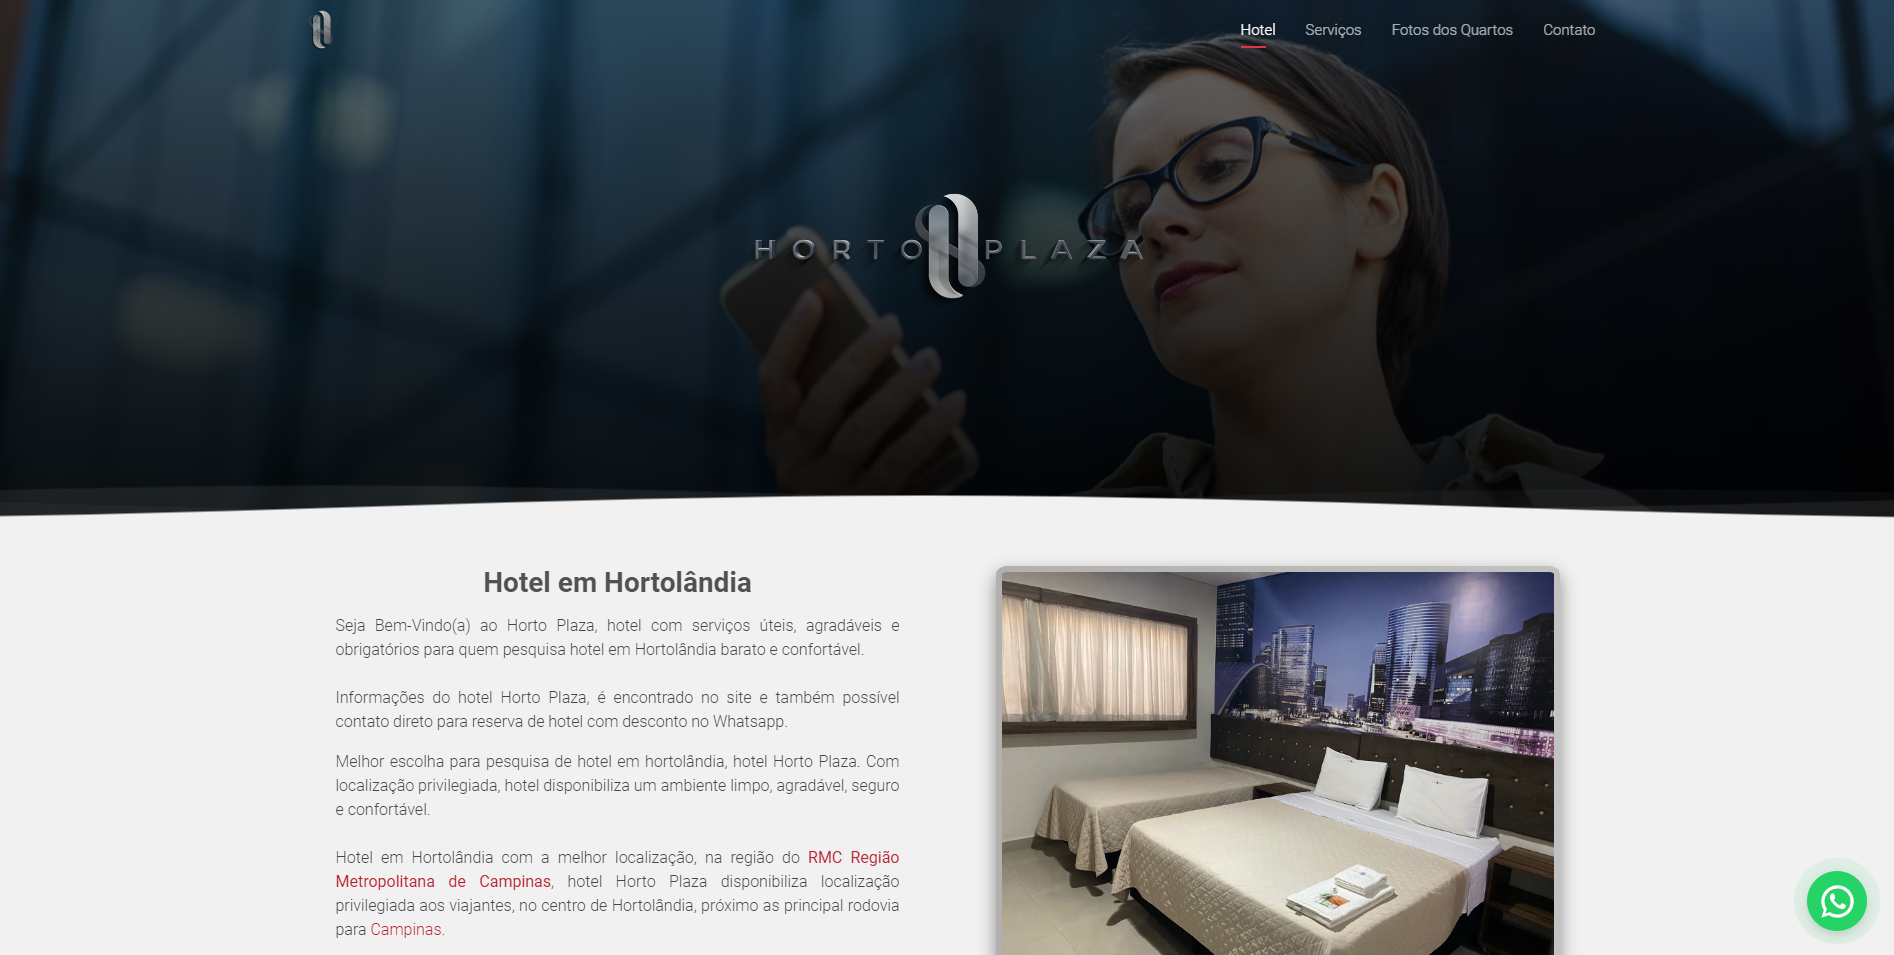 Criação de sites - Projeto Hotel em Hortolândia Horto Plaza